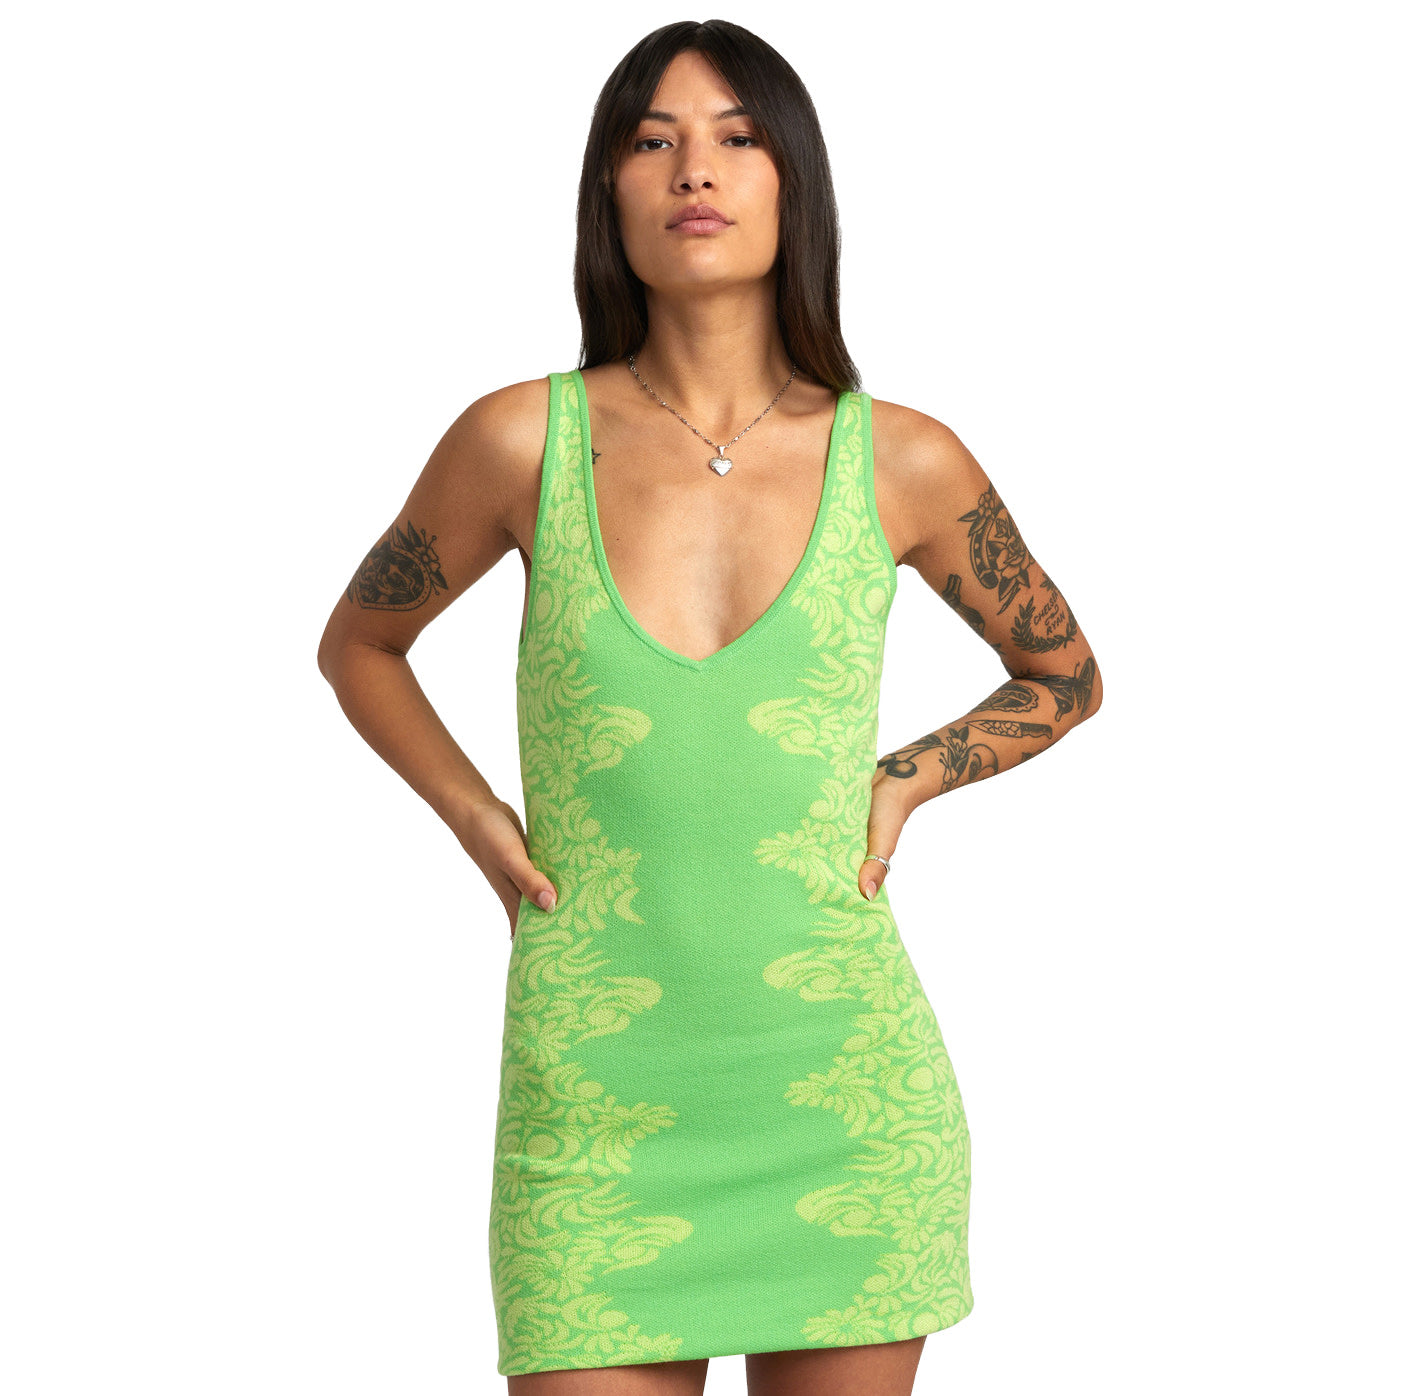 RVCA Mai Tai Sweather Dress GJS0-Green Flash L